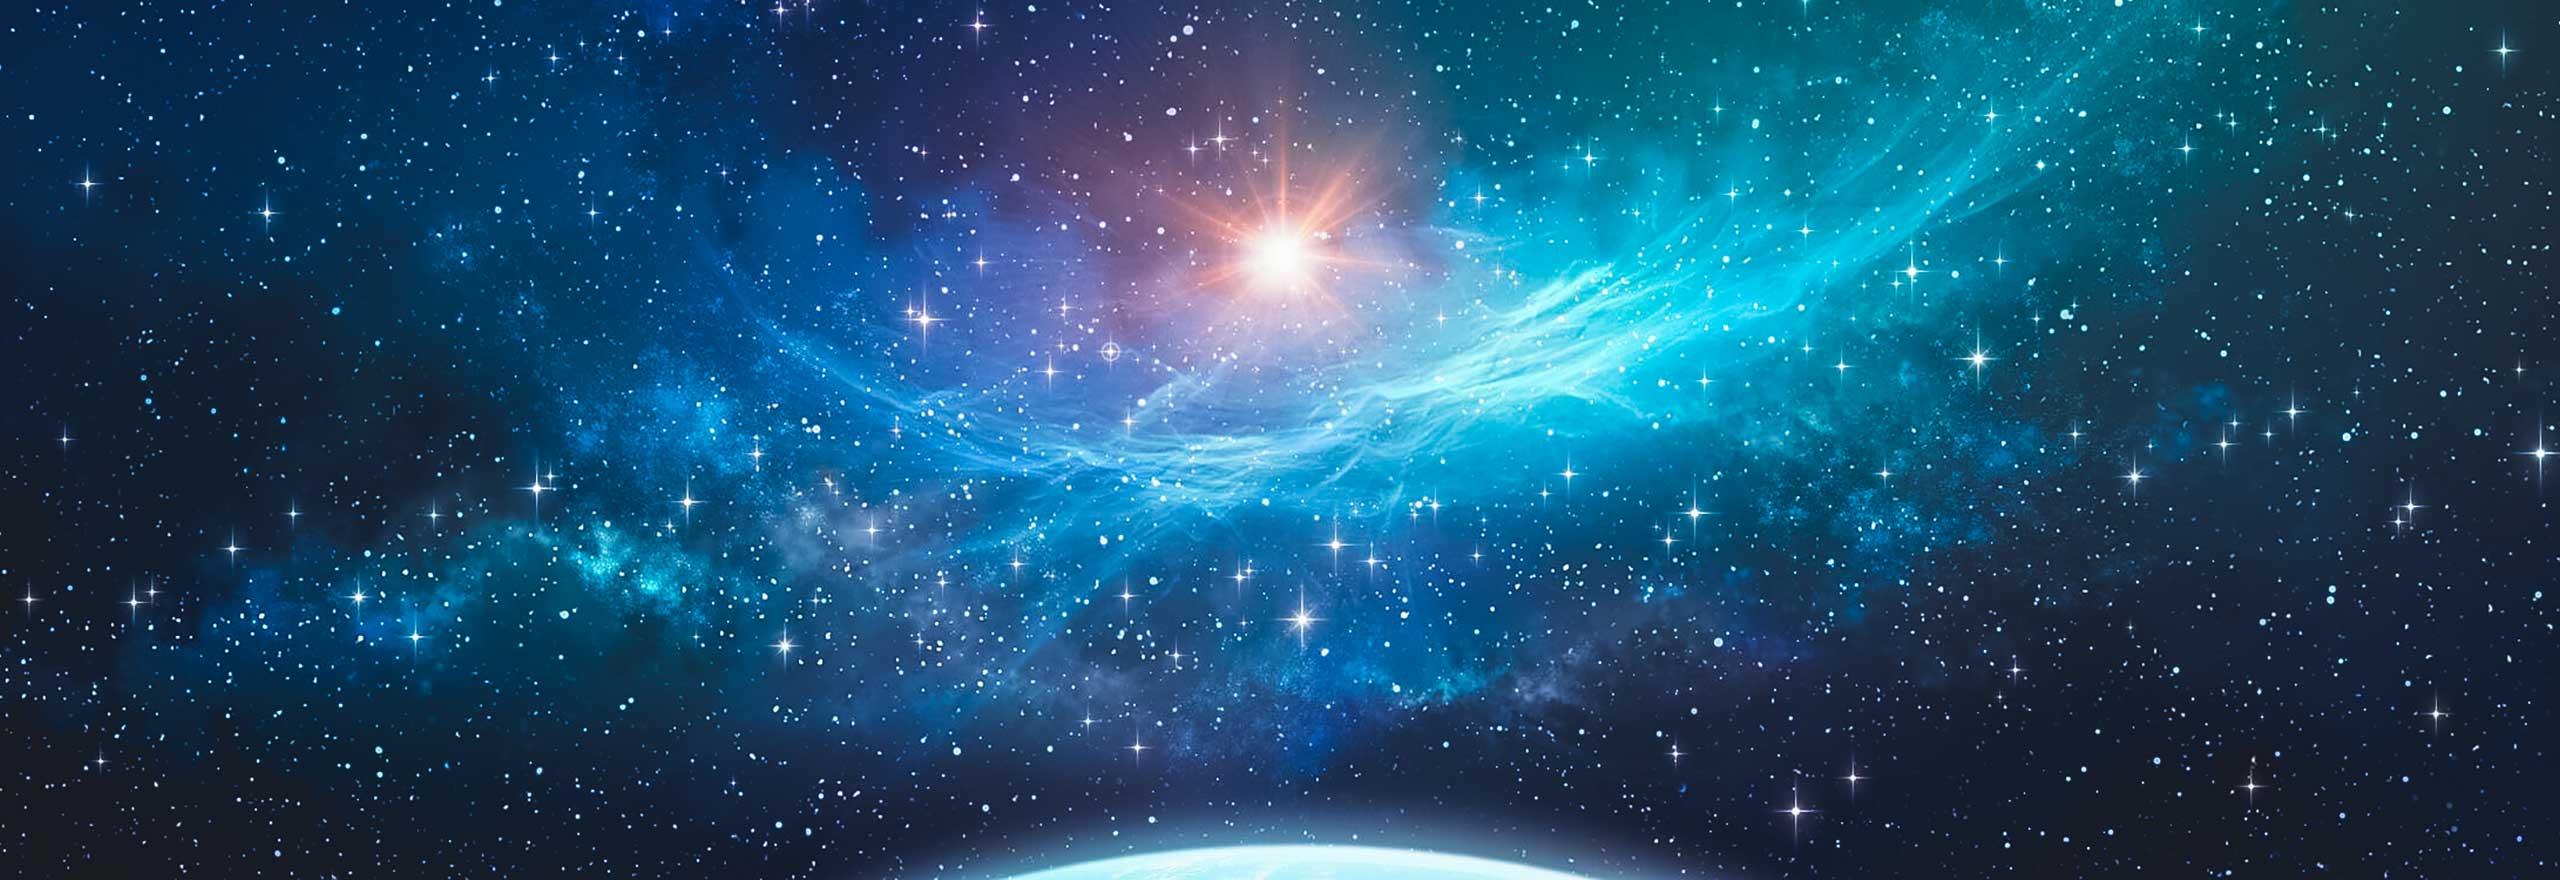 Pianeta extrasolare, ammasso stellare e nebulosa